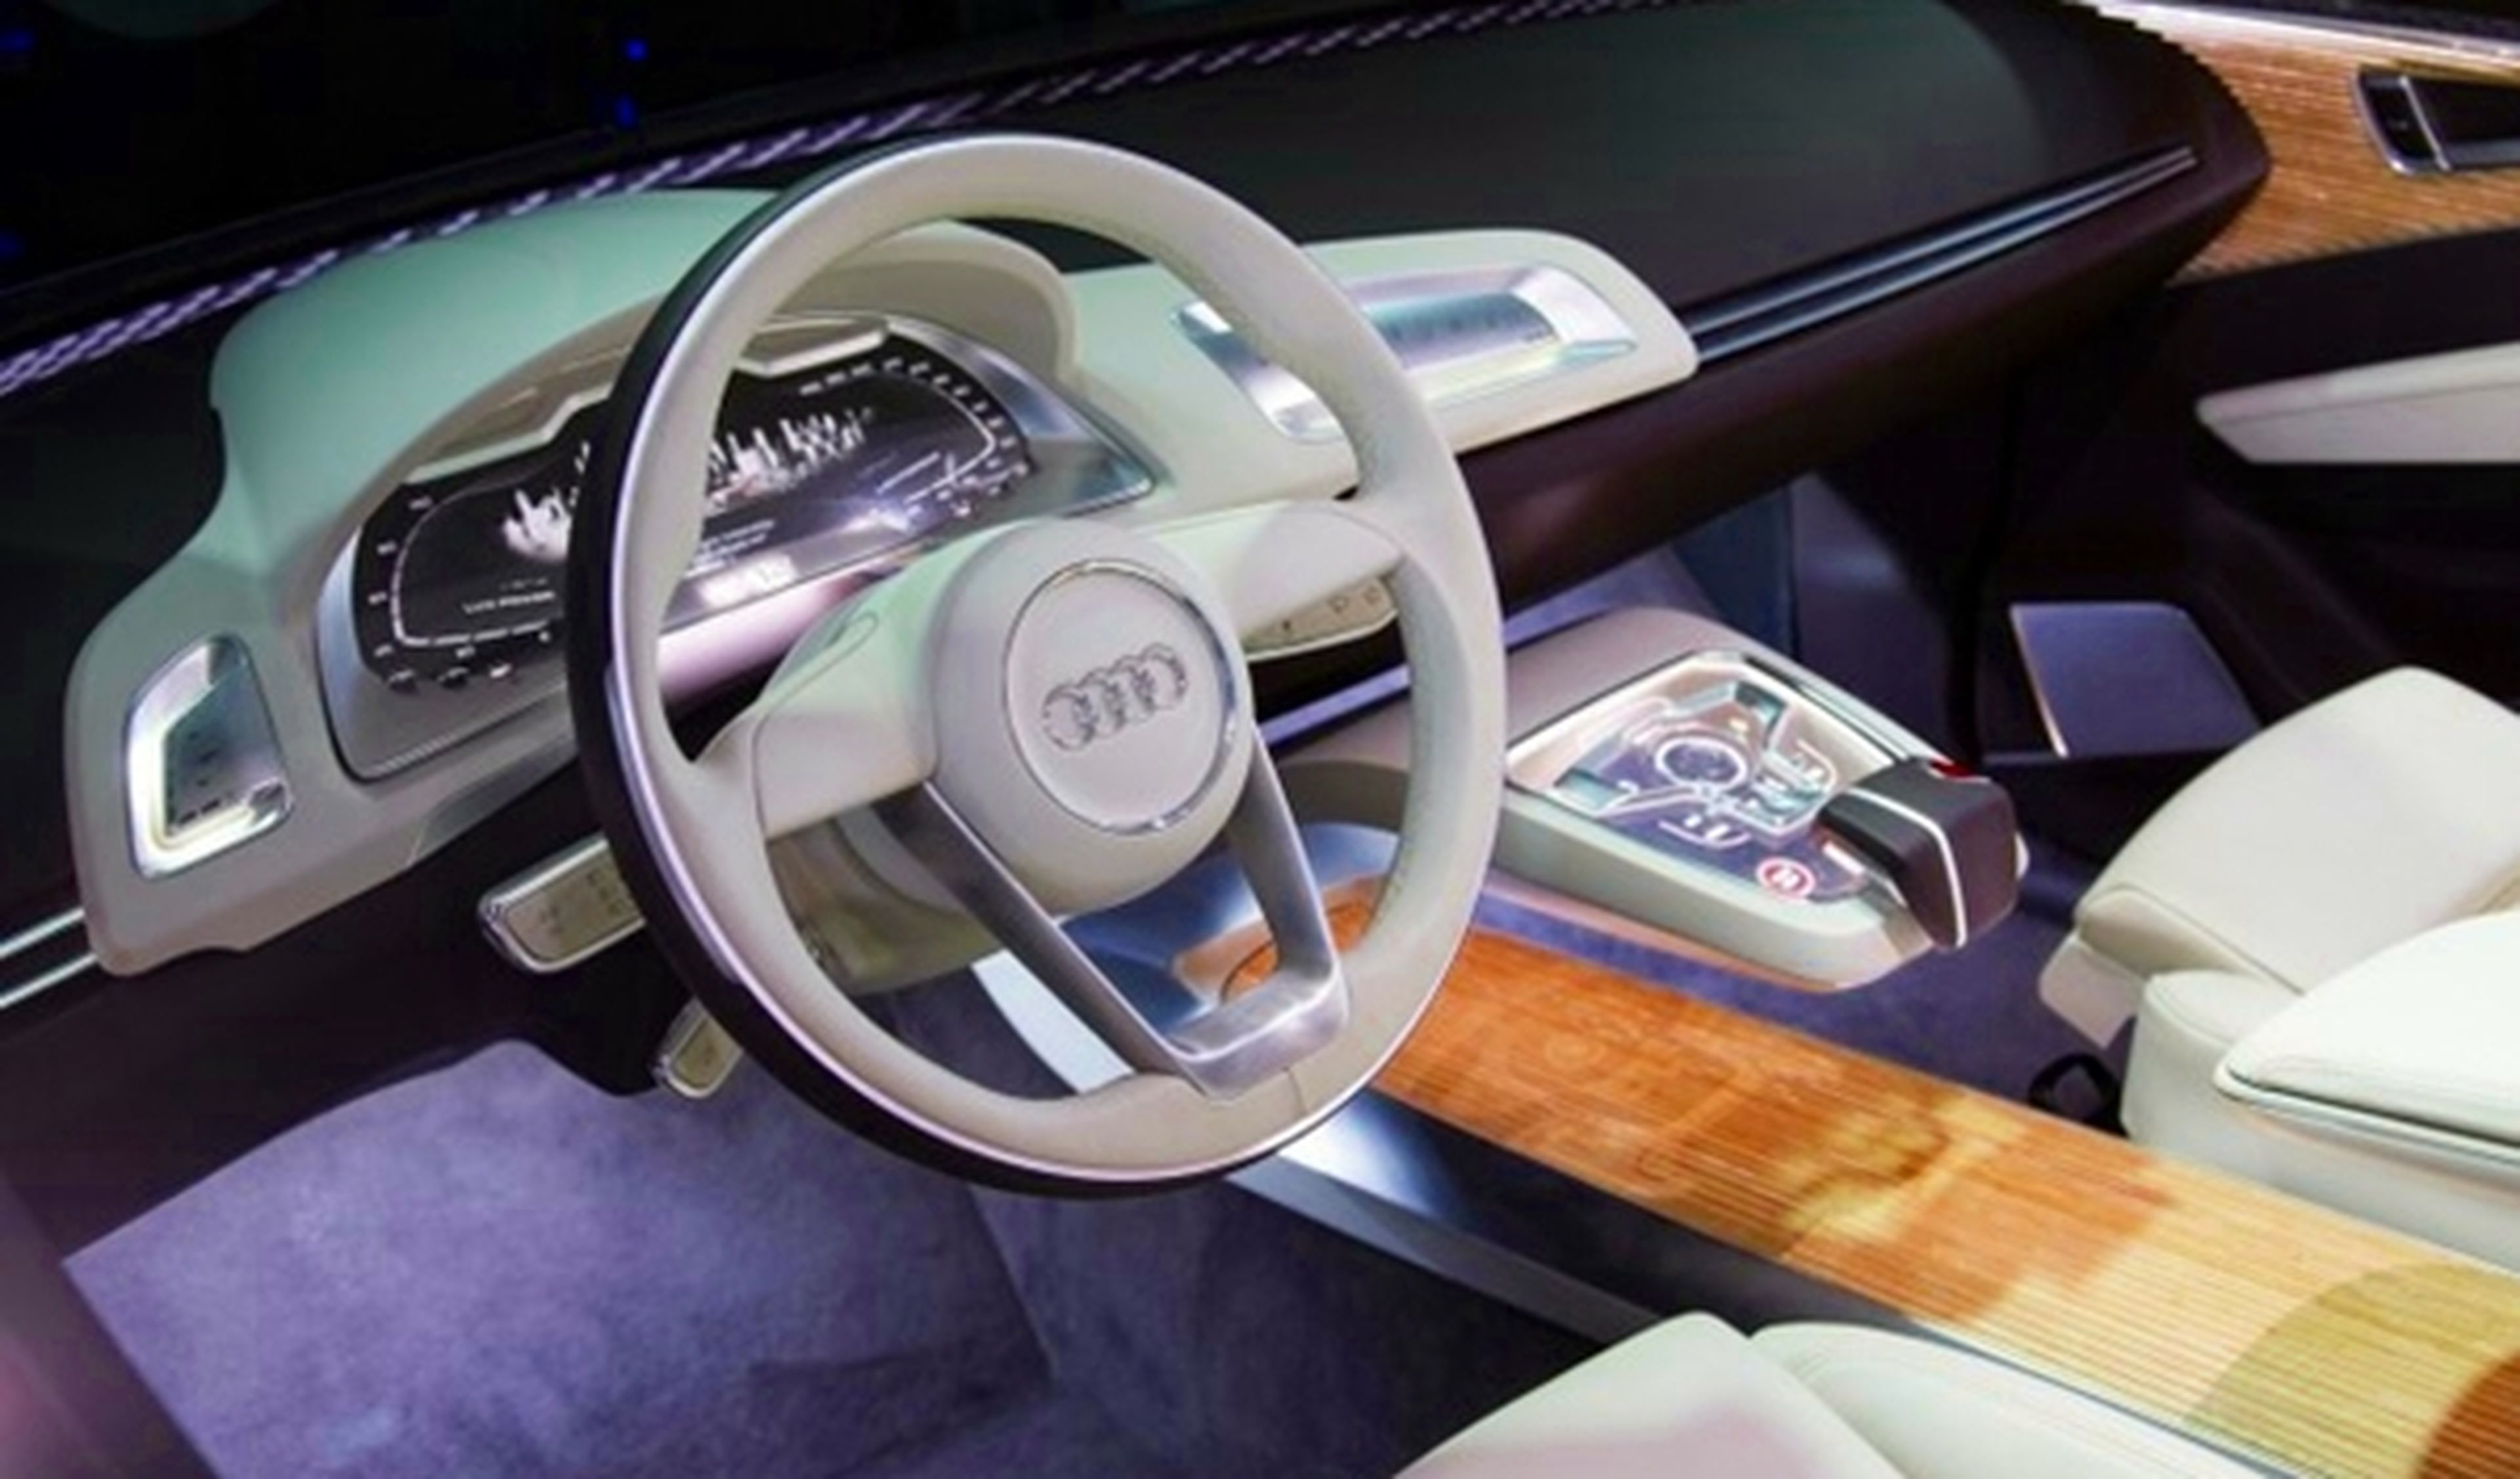 Proyecto de iluminación interior para futuros modelos Audi, presentado en el CES 2014